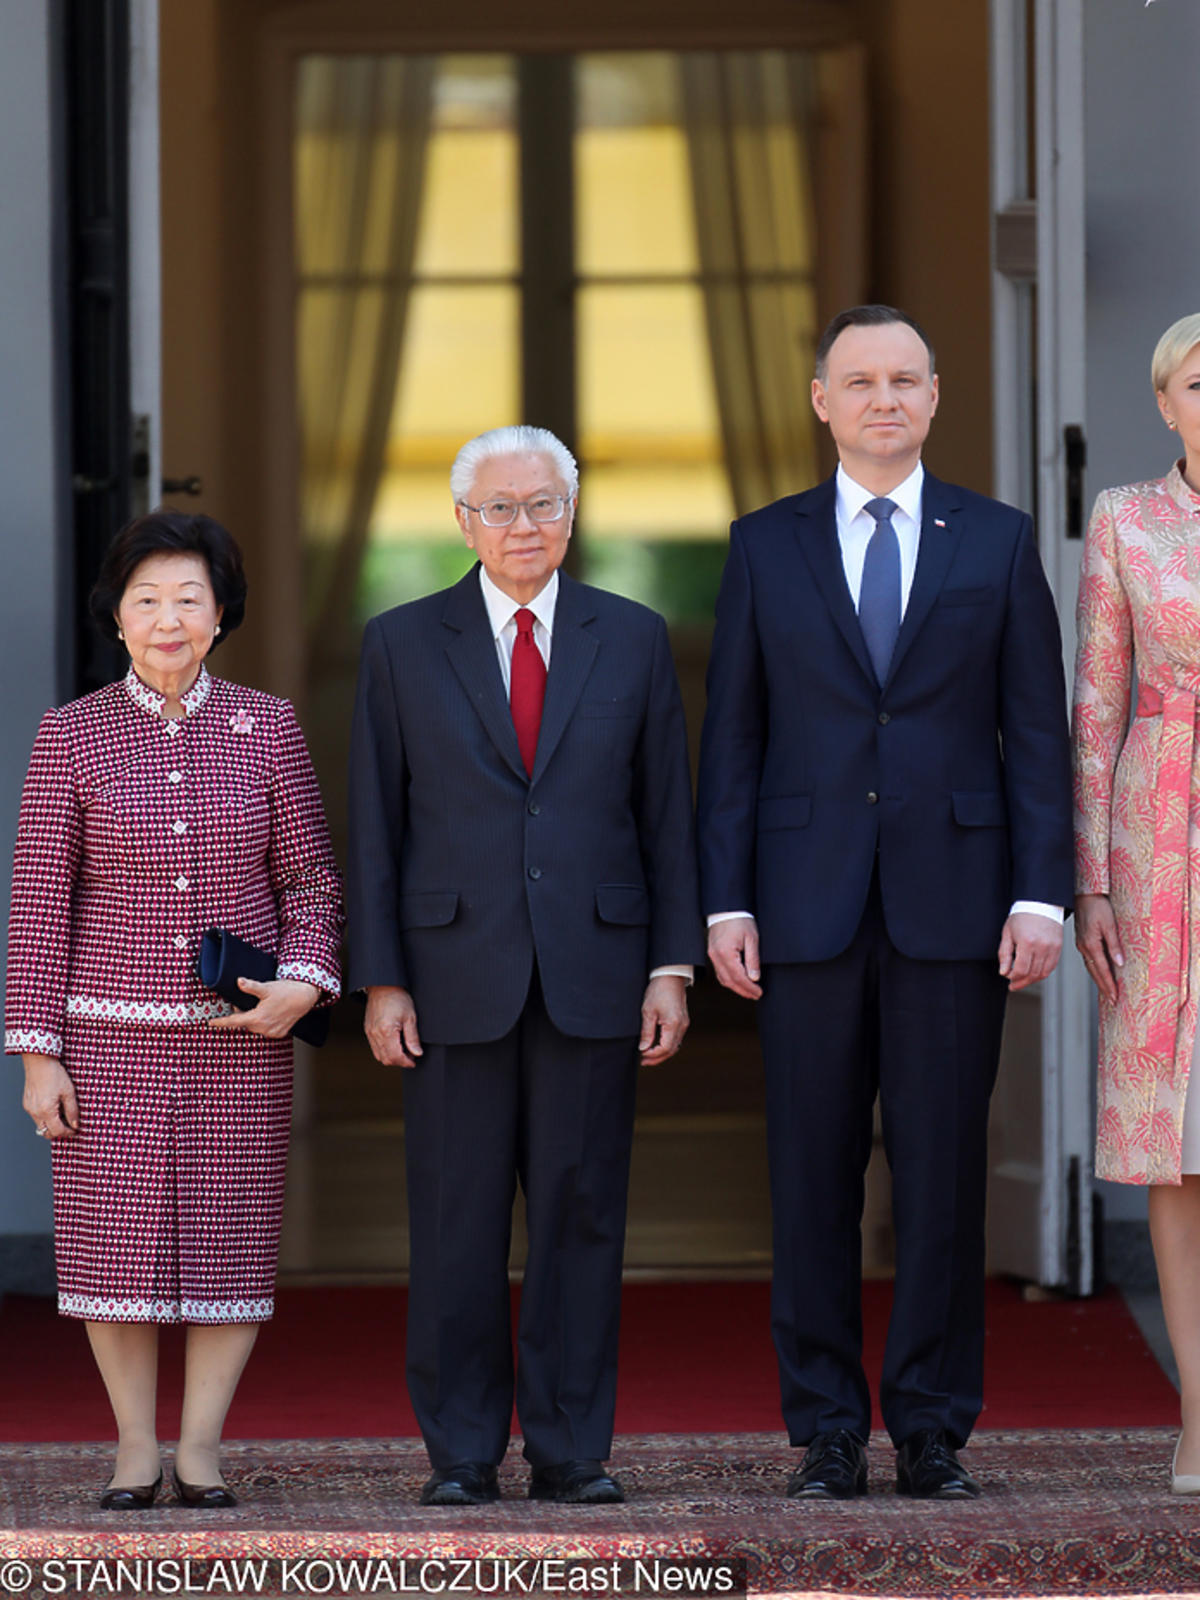 Agata Duda w kolorowej stylizacji na spotkaniu z prezydentem Singapuru